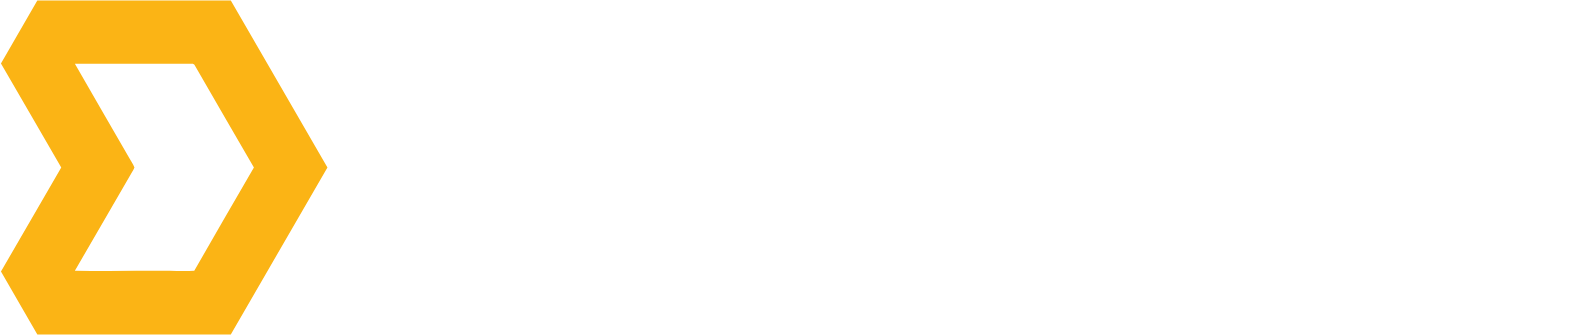 Direct Digital Holdings Logo groß für dunkle Hintergründe (transparentes PNG)